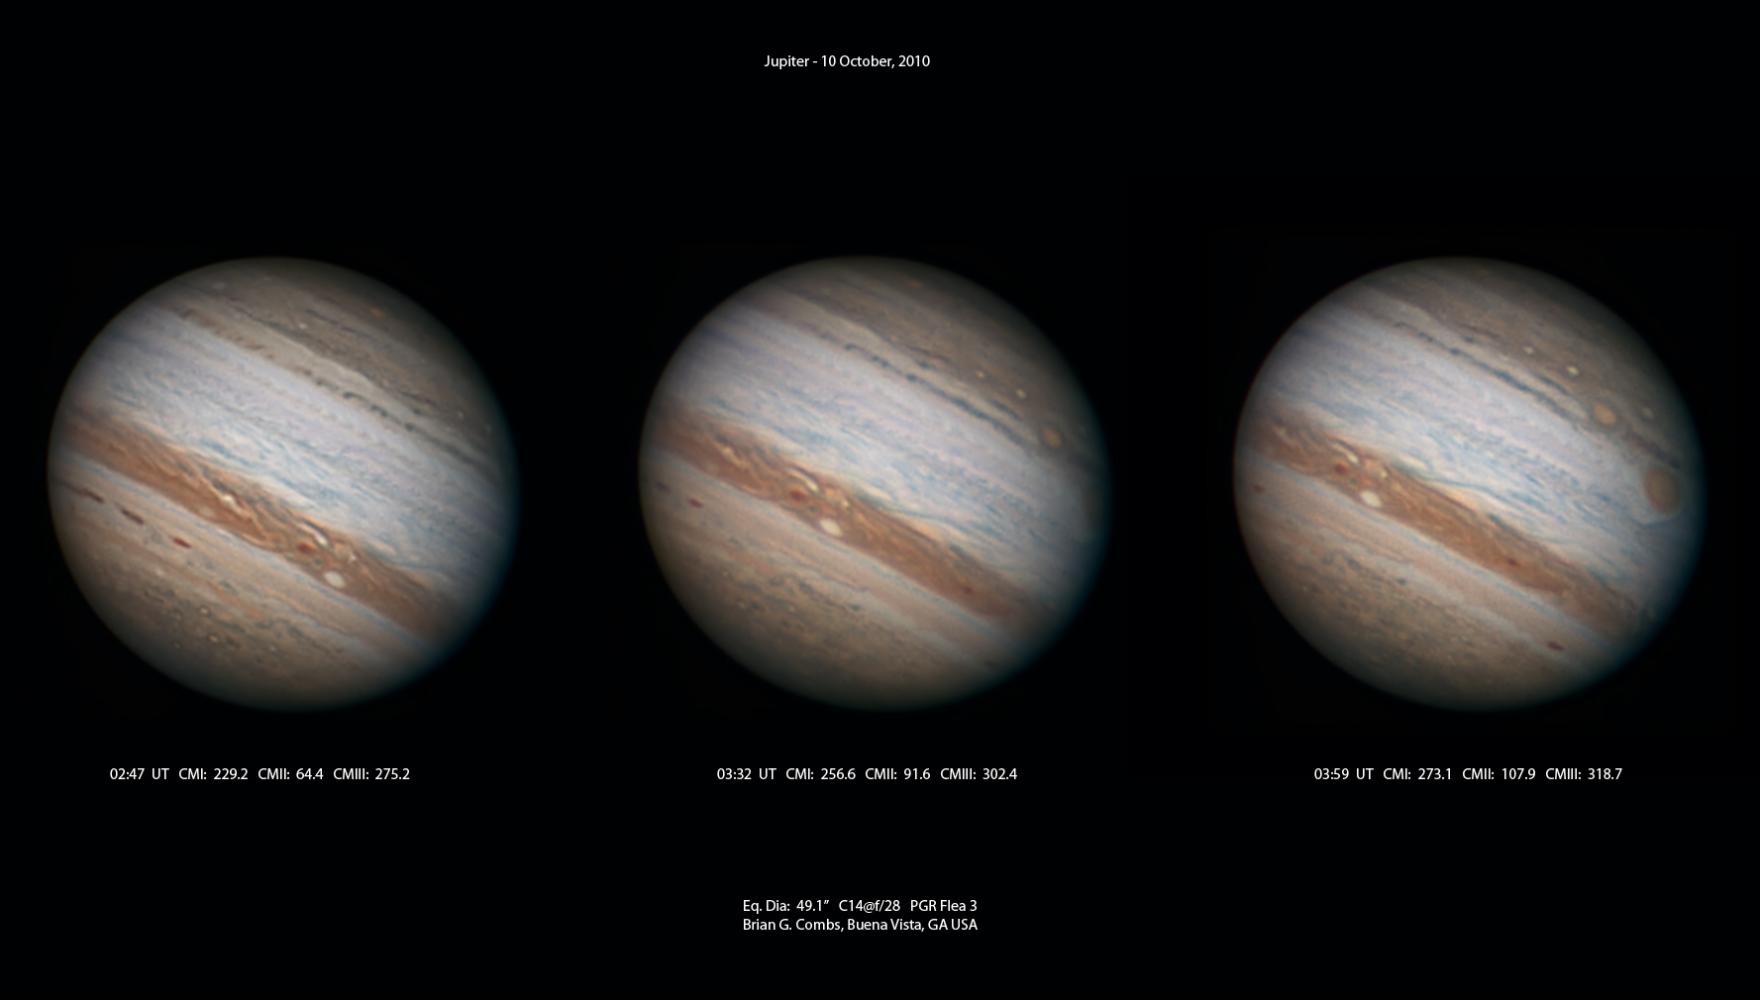 Jupiter - October 10, 2010